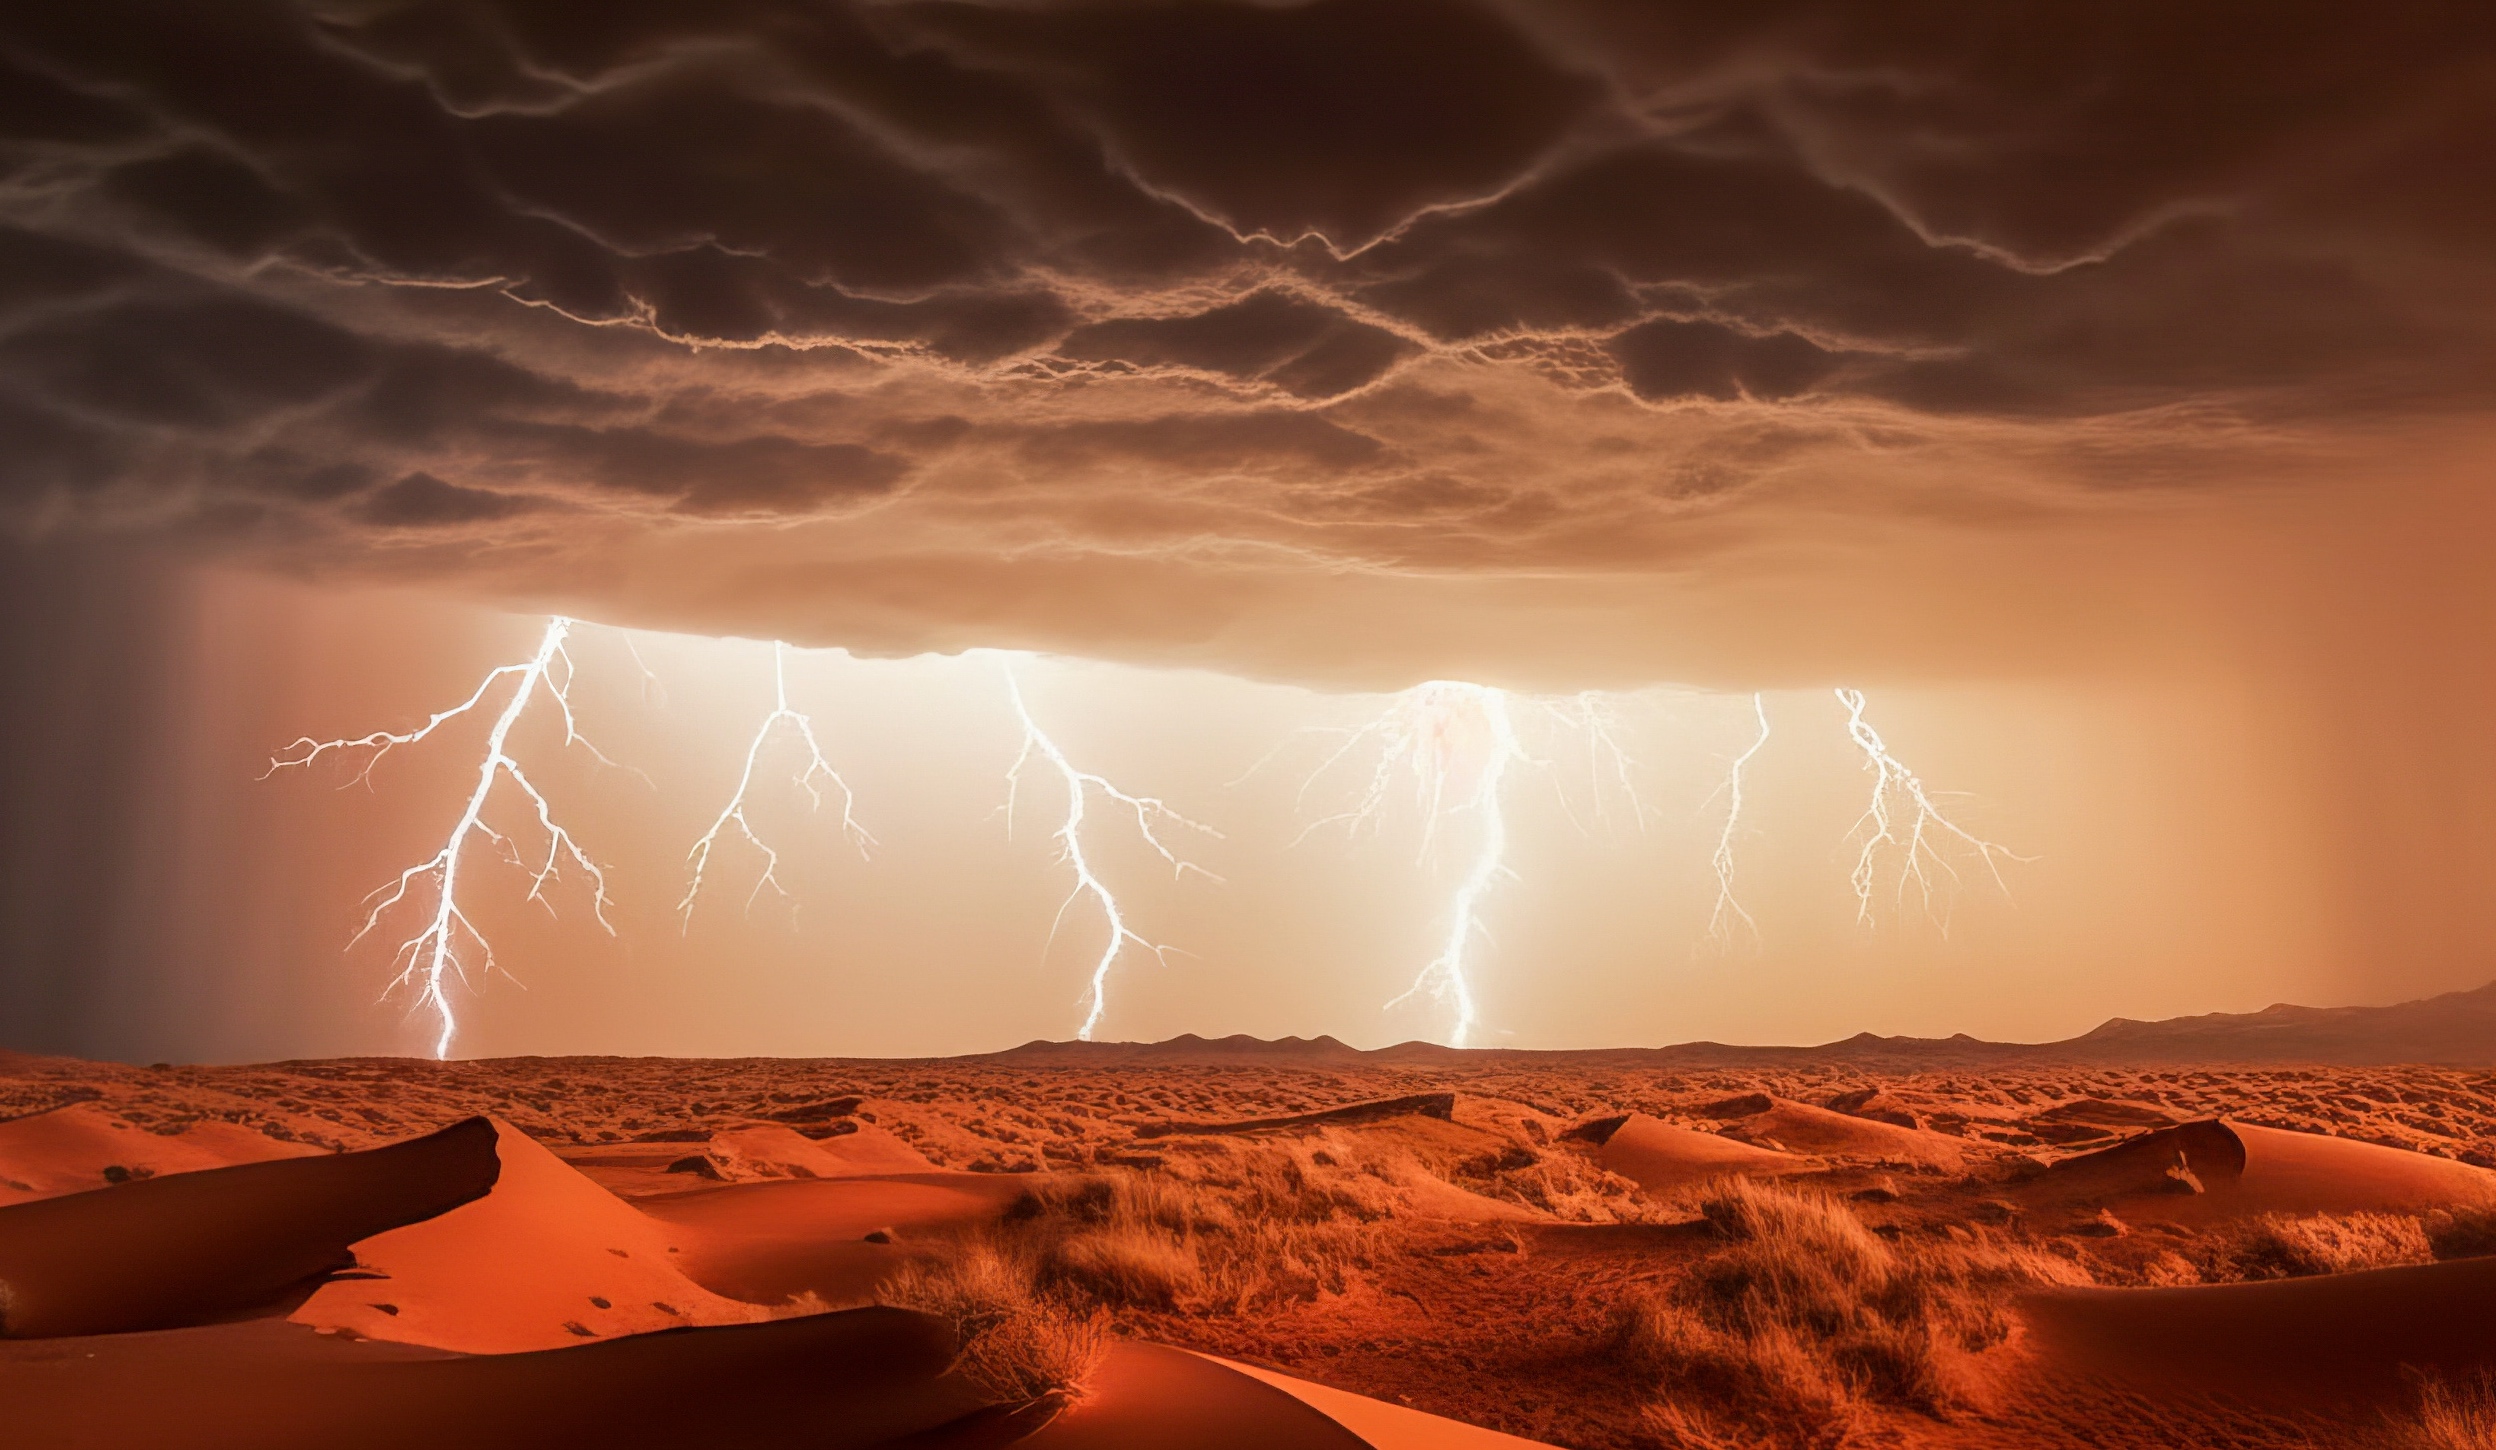 Image générée par une IA d'un orage avec de multiples éclairs. © Alexander, Adobe Stock